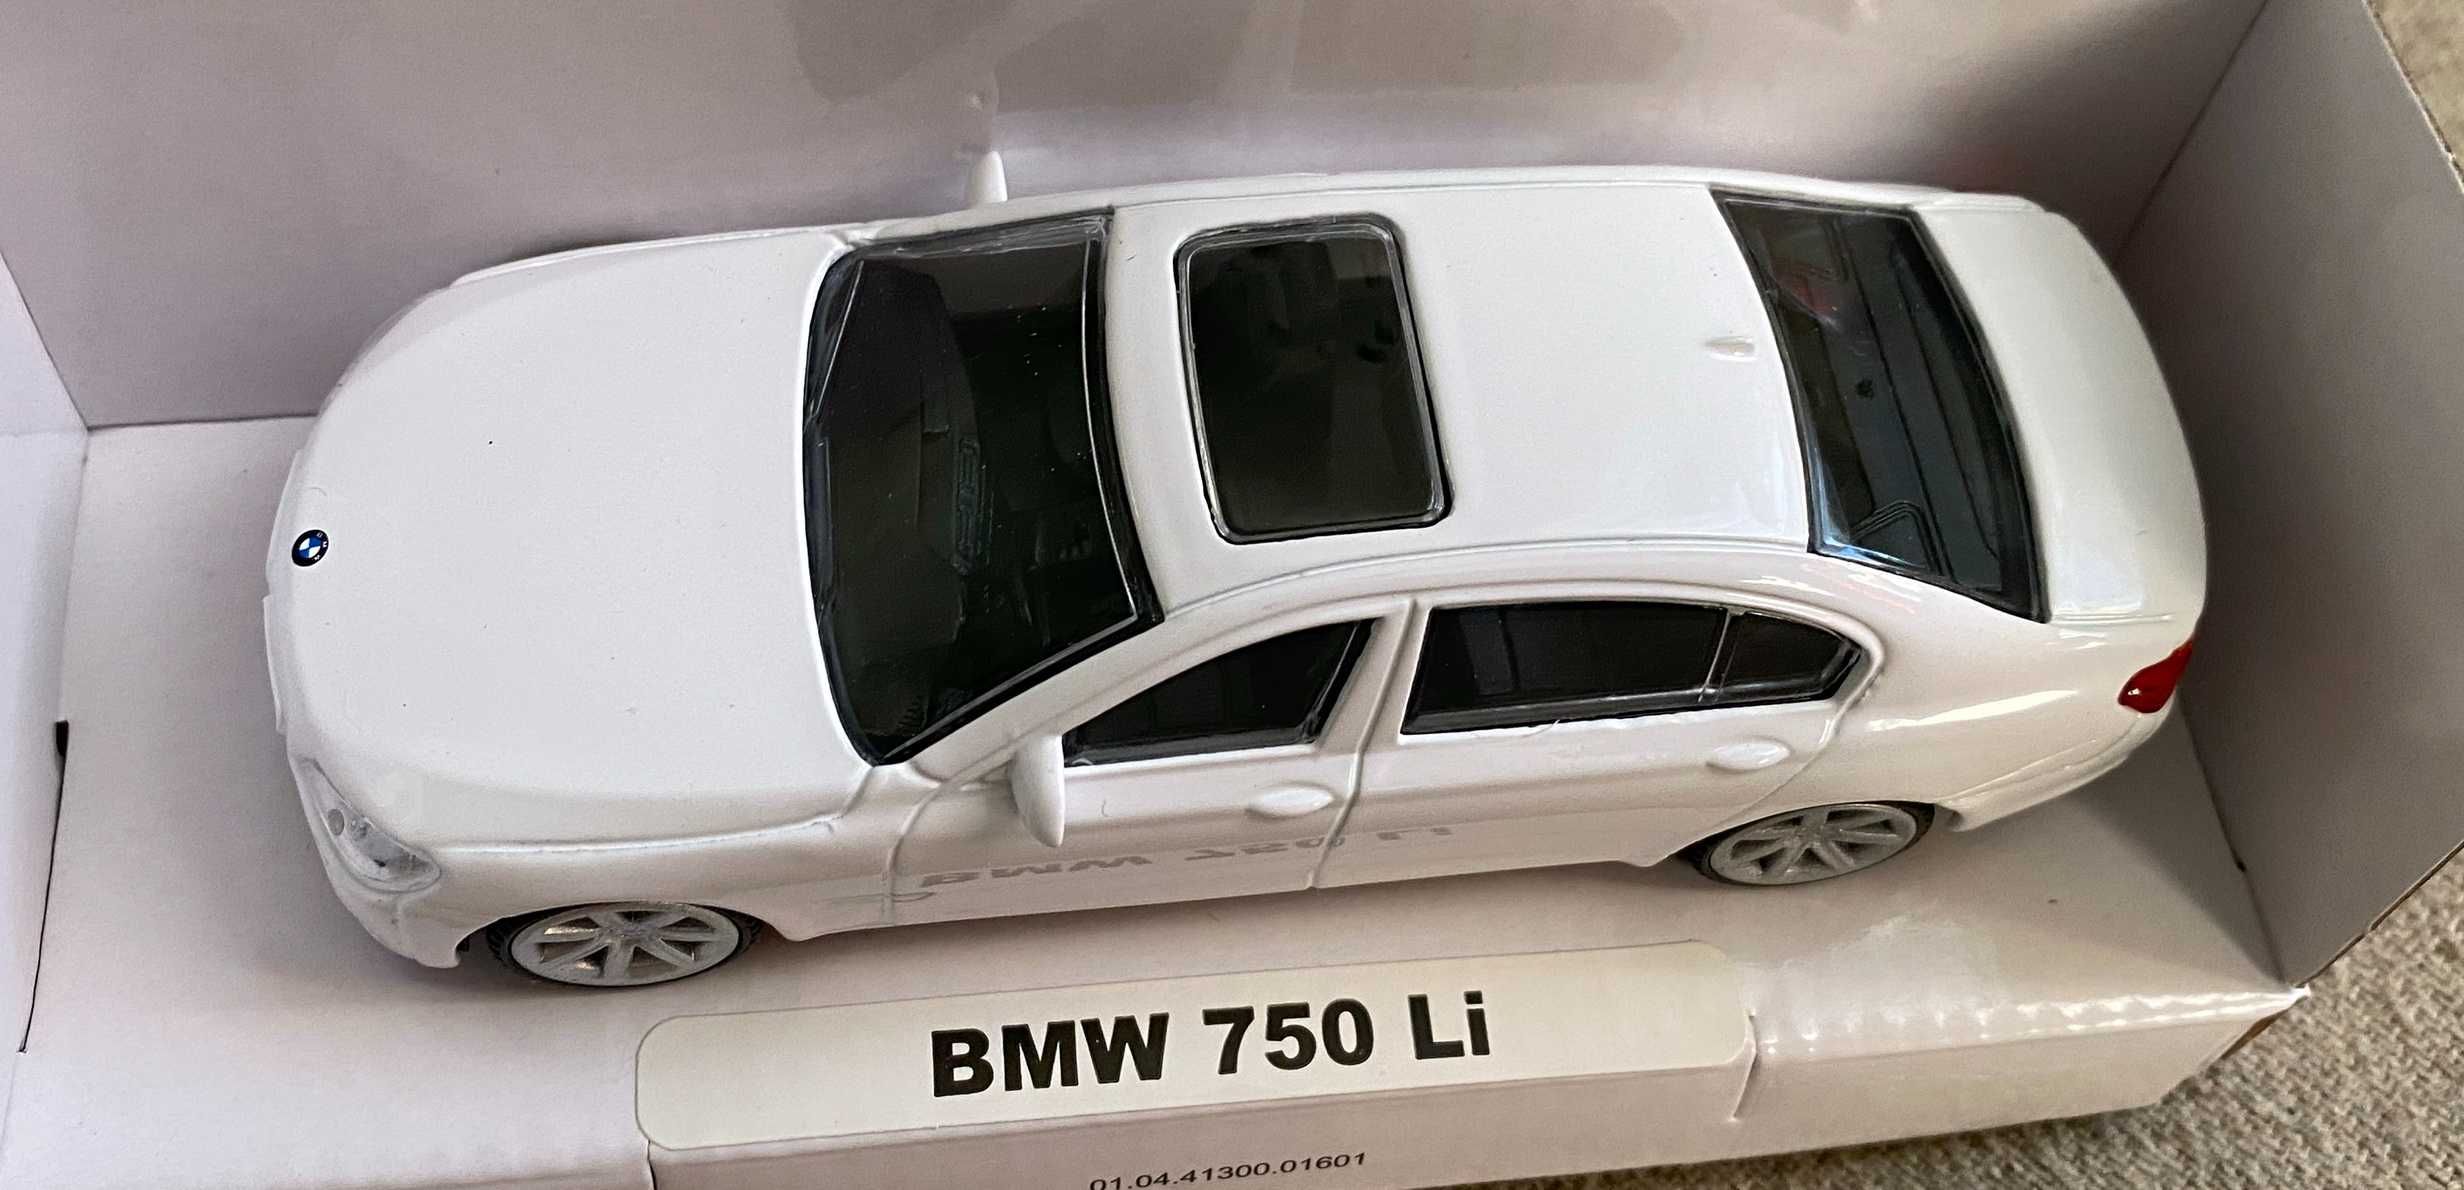 Macheta masinuta BMW 750 Li alb scara 1 43 - metal - noua